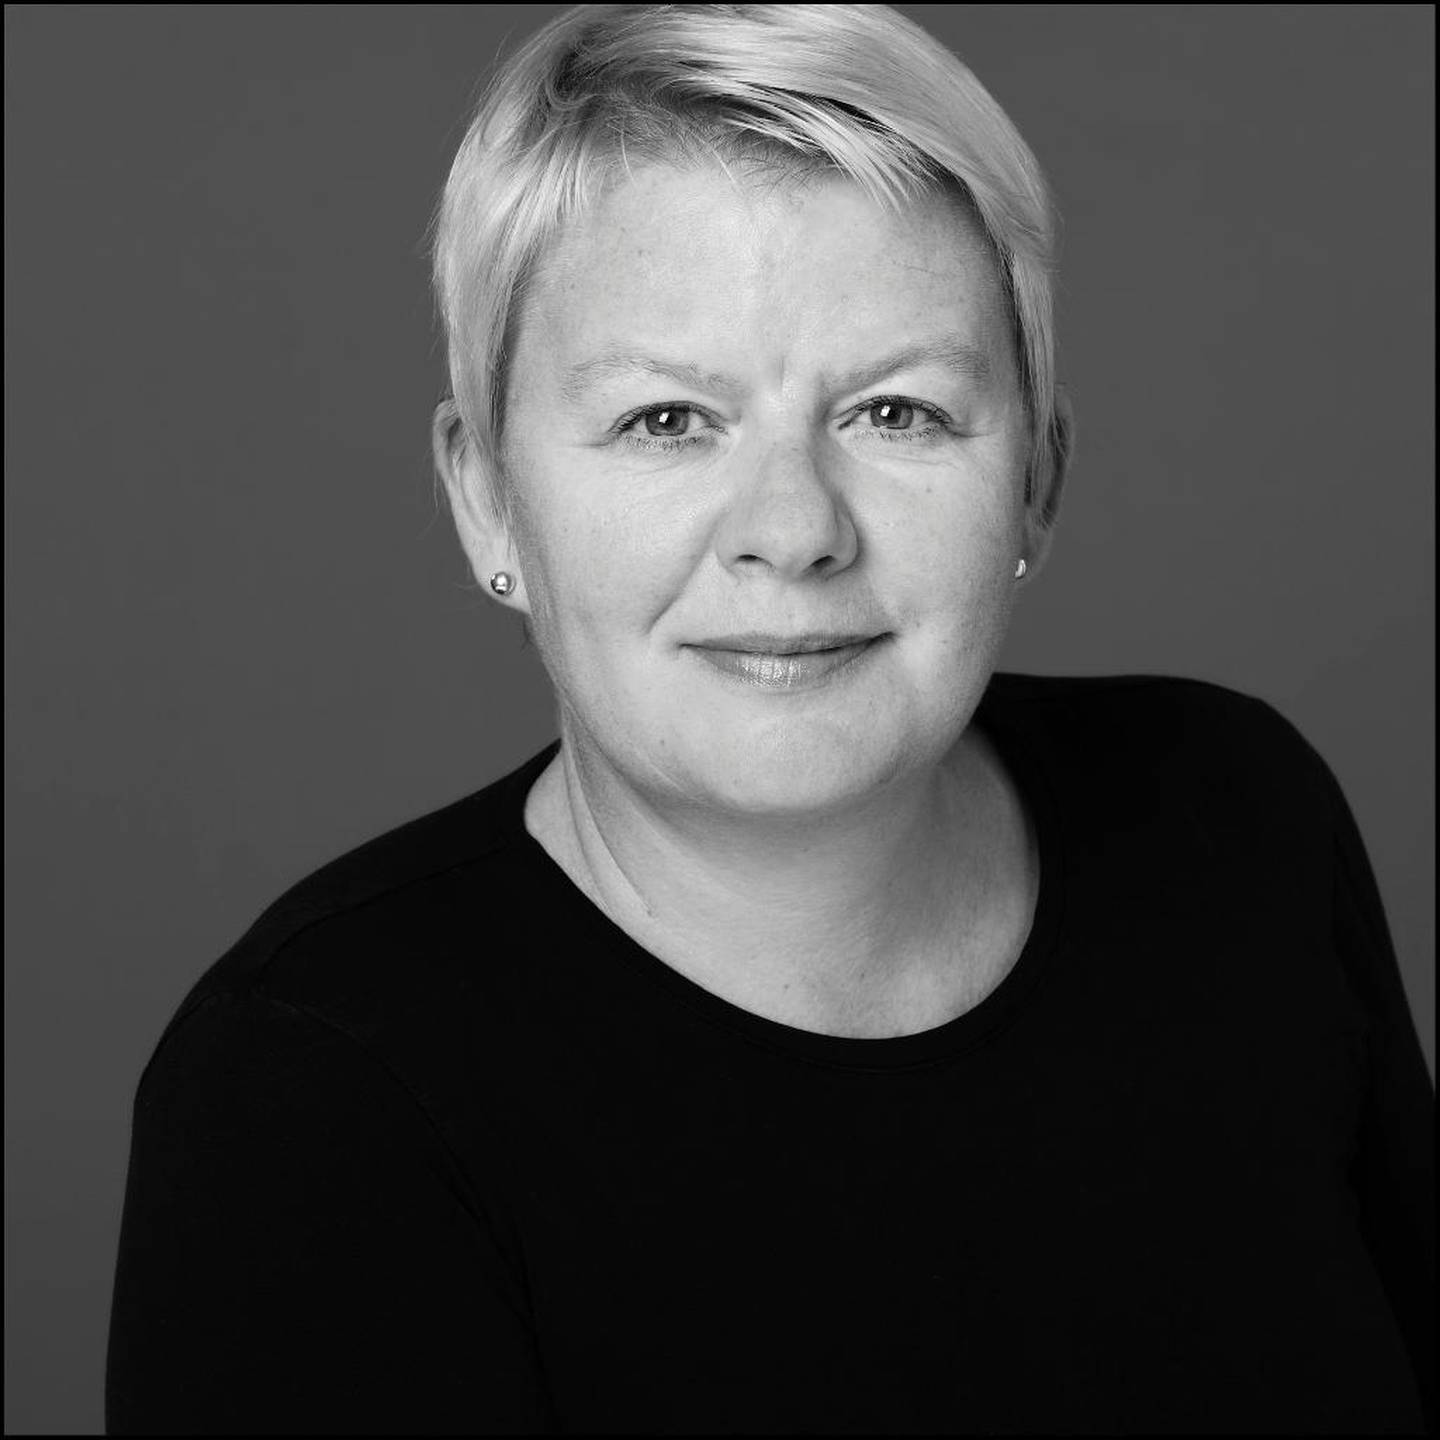 – Tidsskrifter handler også om å kunne sitte stille og rolig, og bli ­opplyst, sier Bente Riise, redaktør i Norsk Tidsskriftforening.